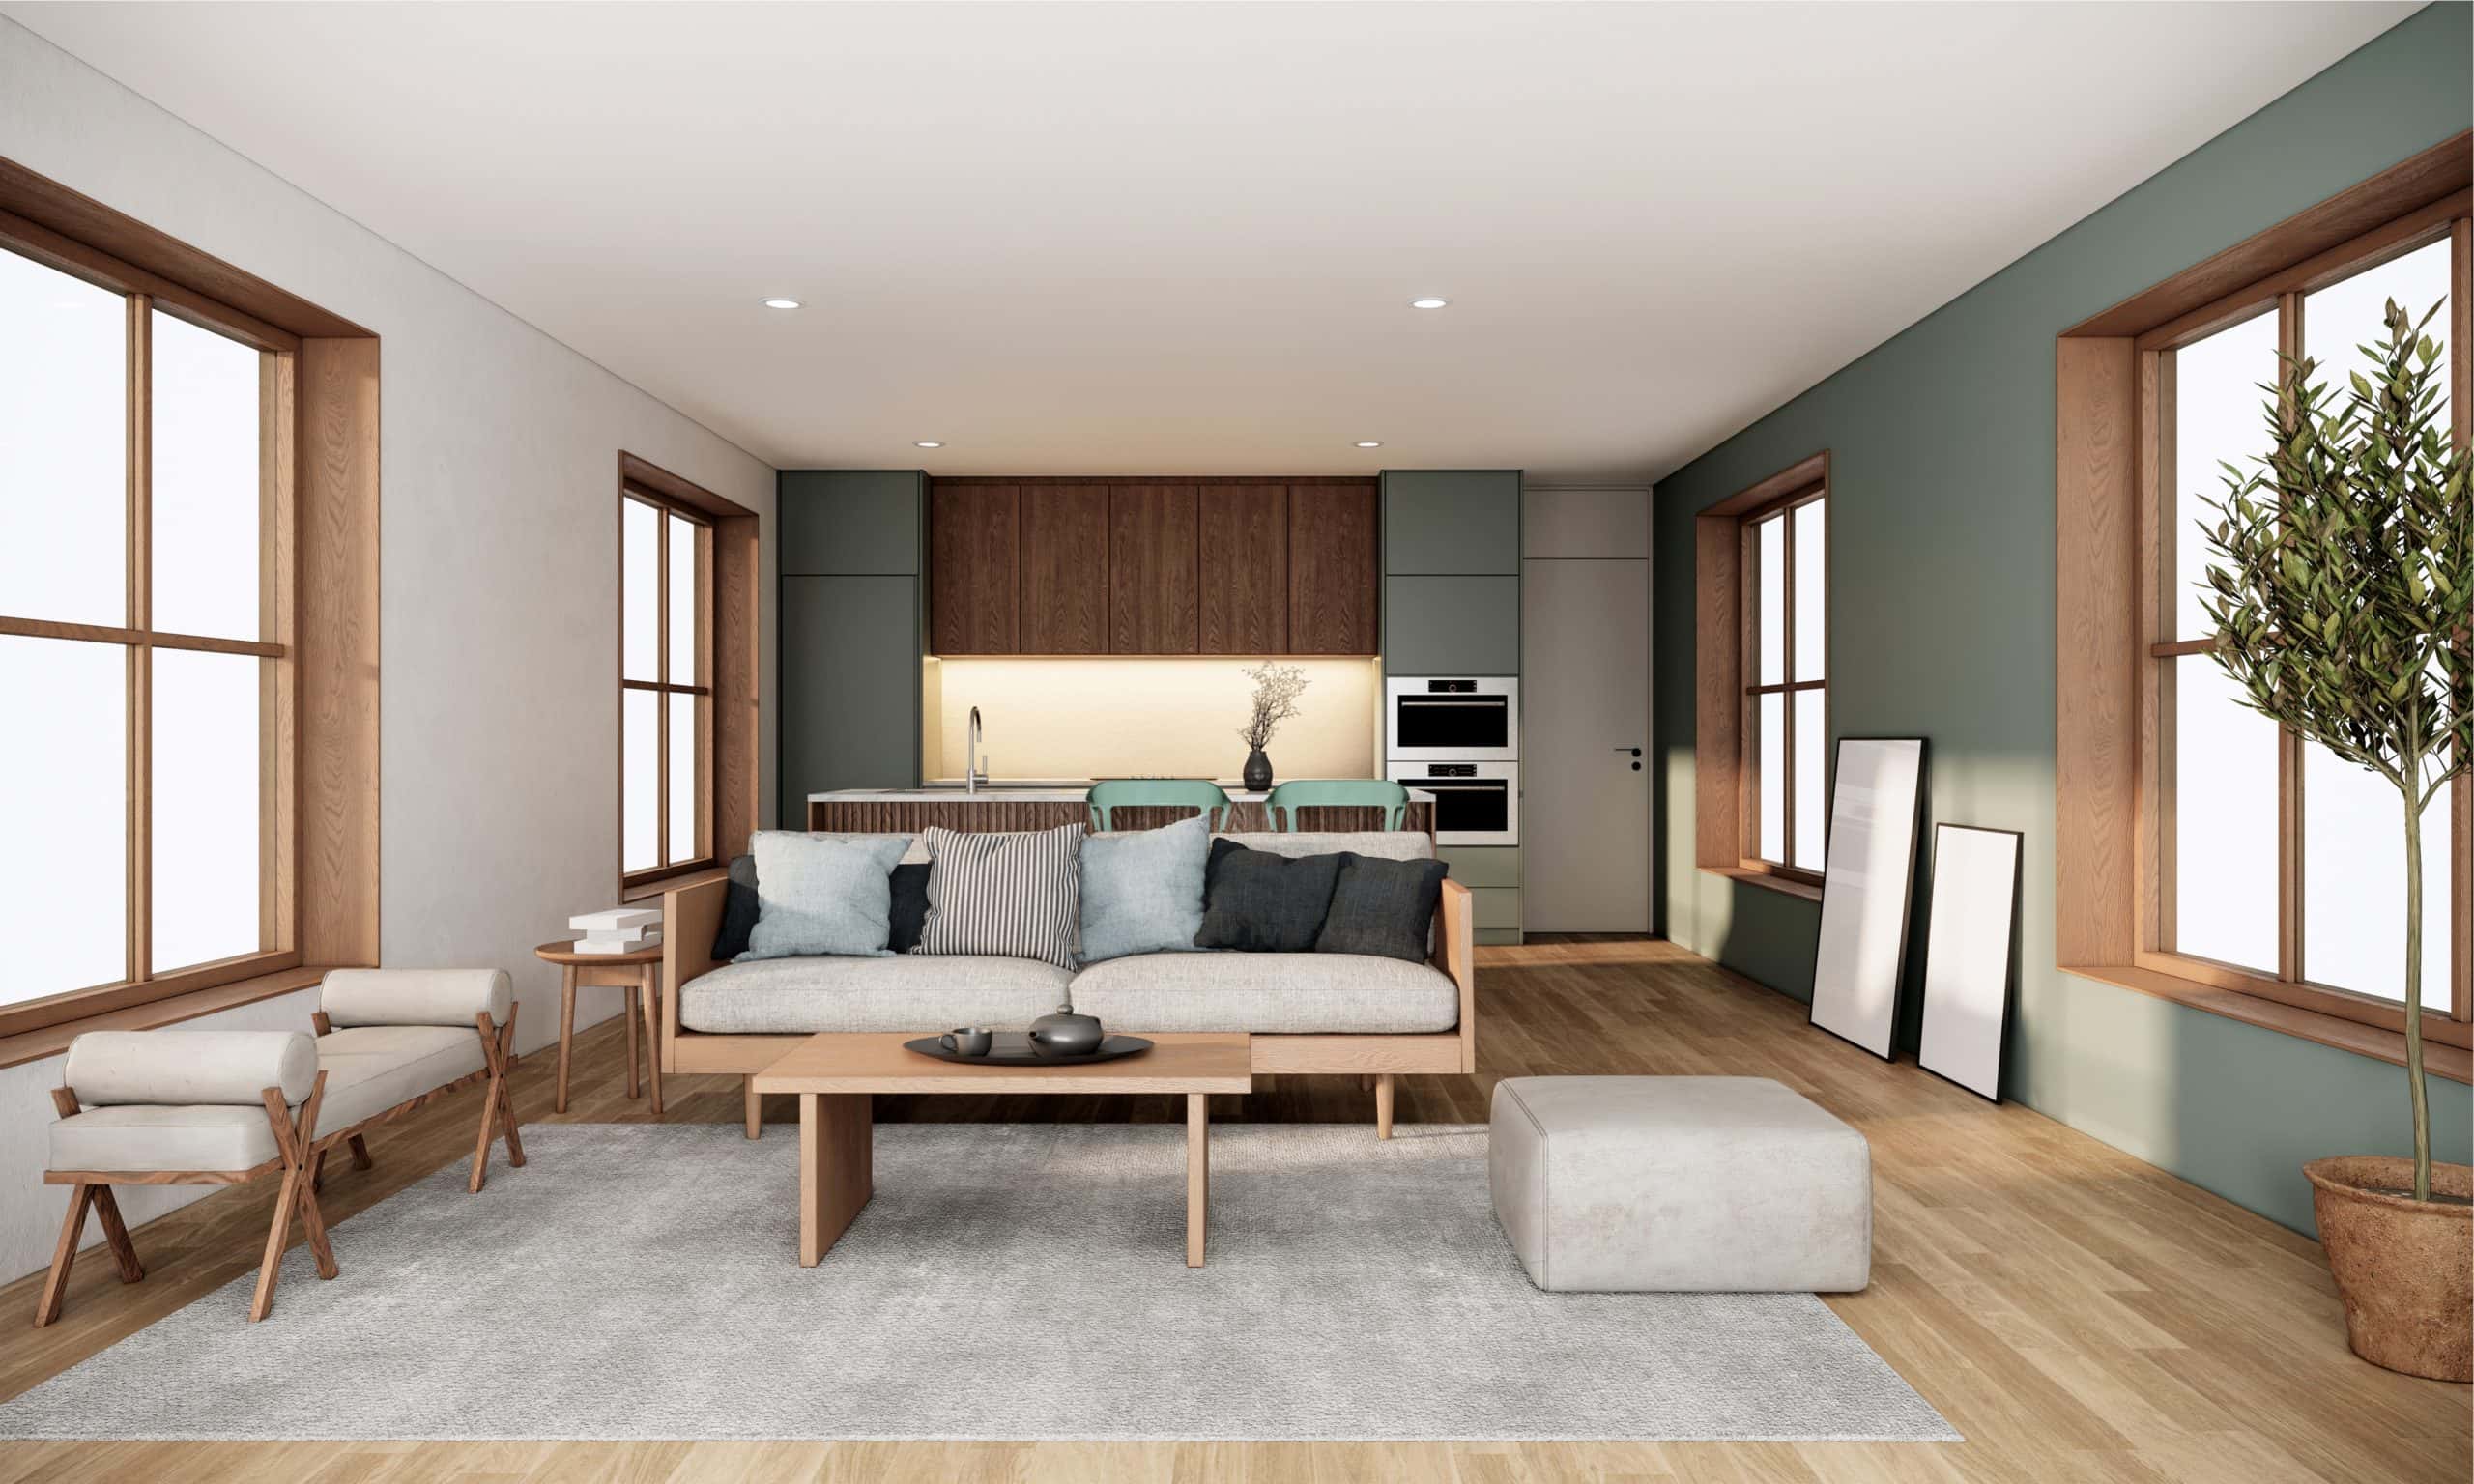 japandi style living room ideas